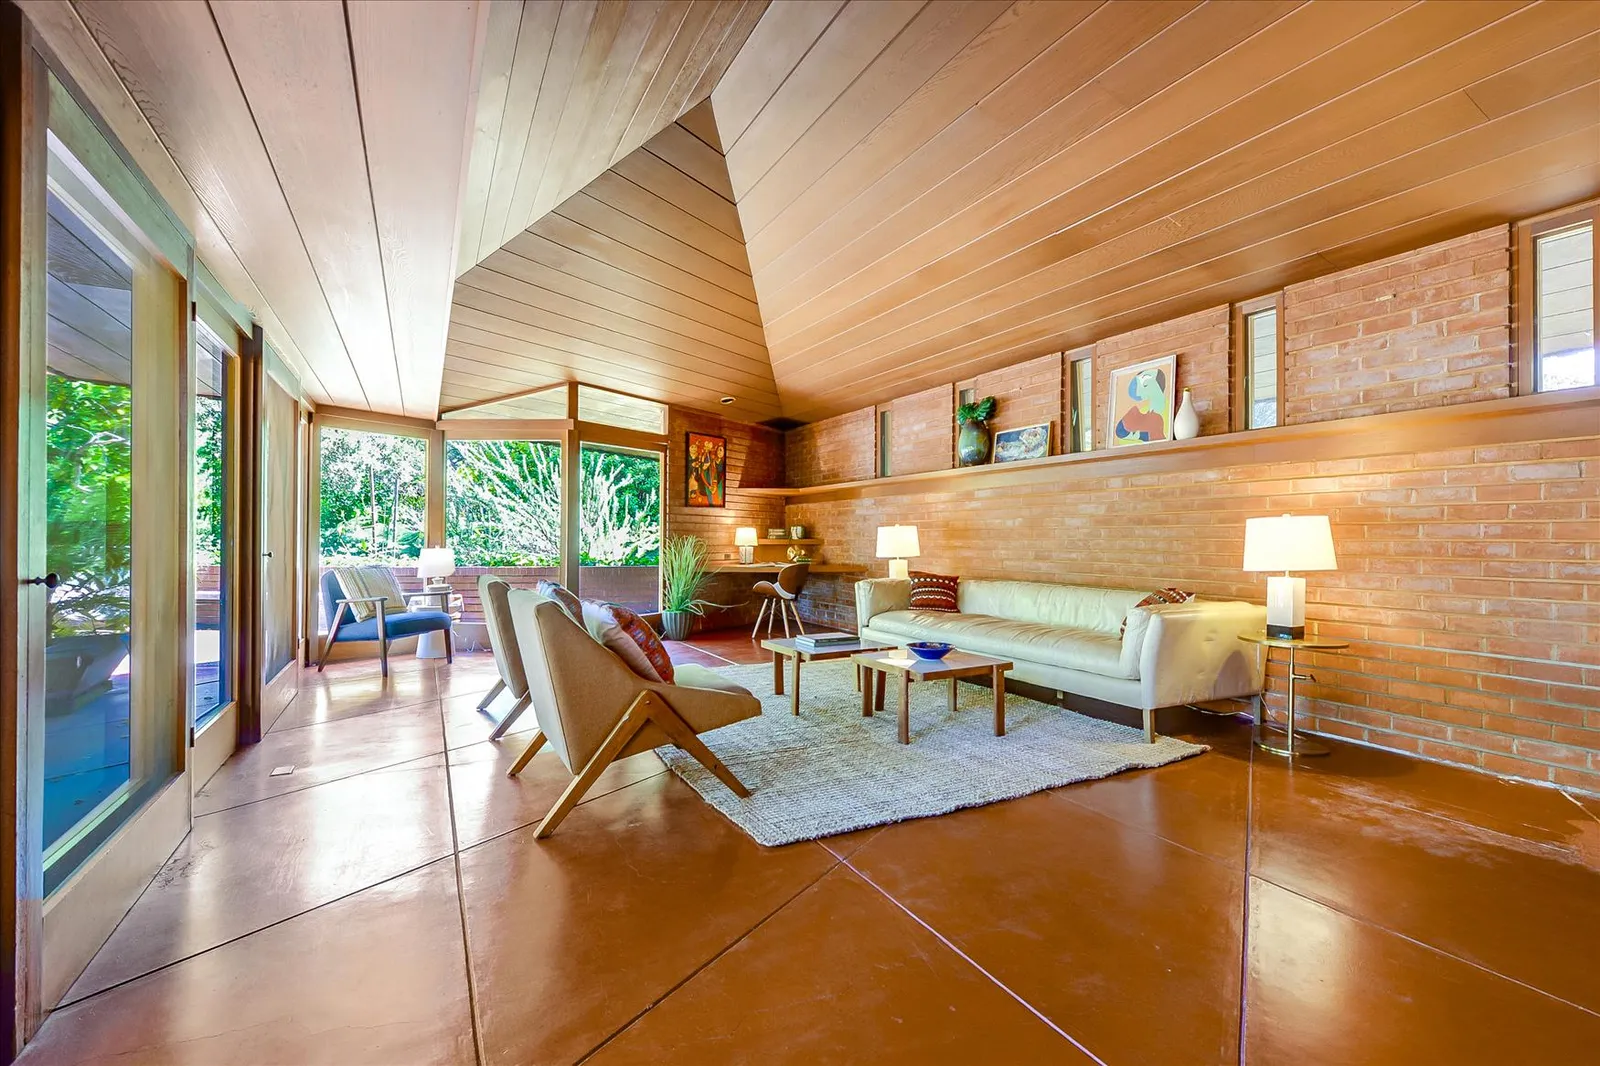 Localizada na cidade mais rica dos EUA, casa rara projetada por Frank Lloyd Wright é colocada à venda